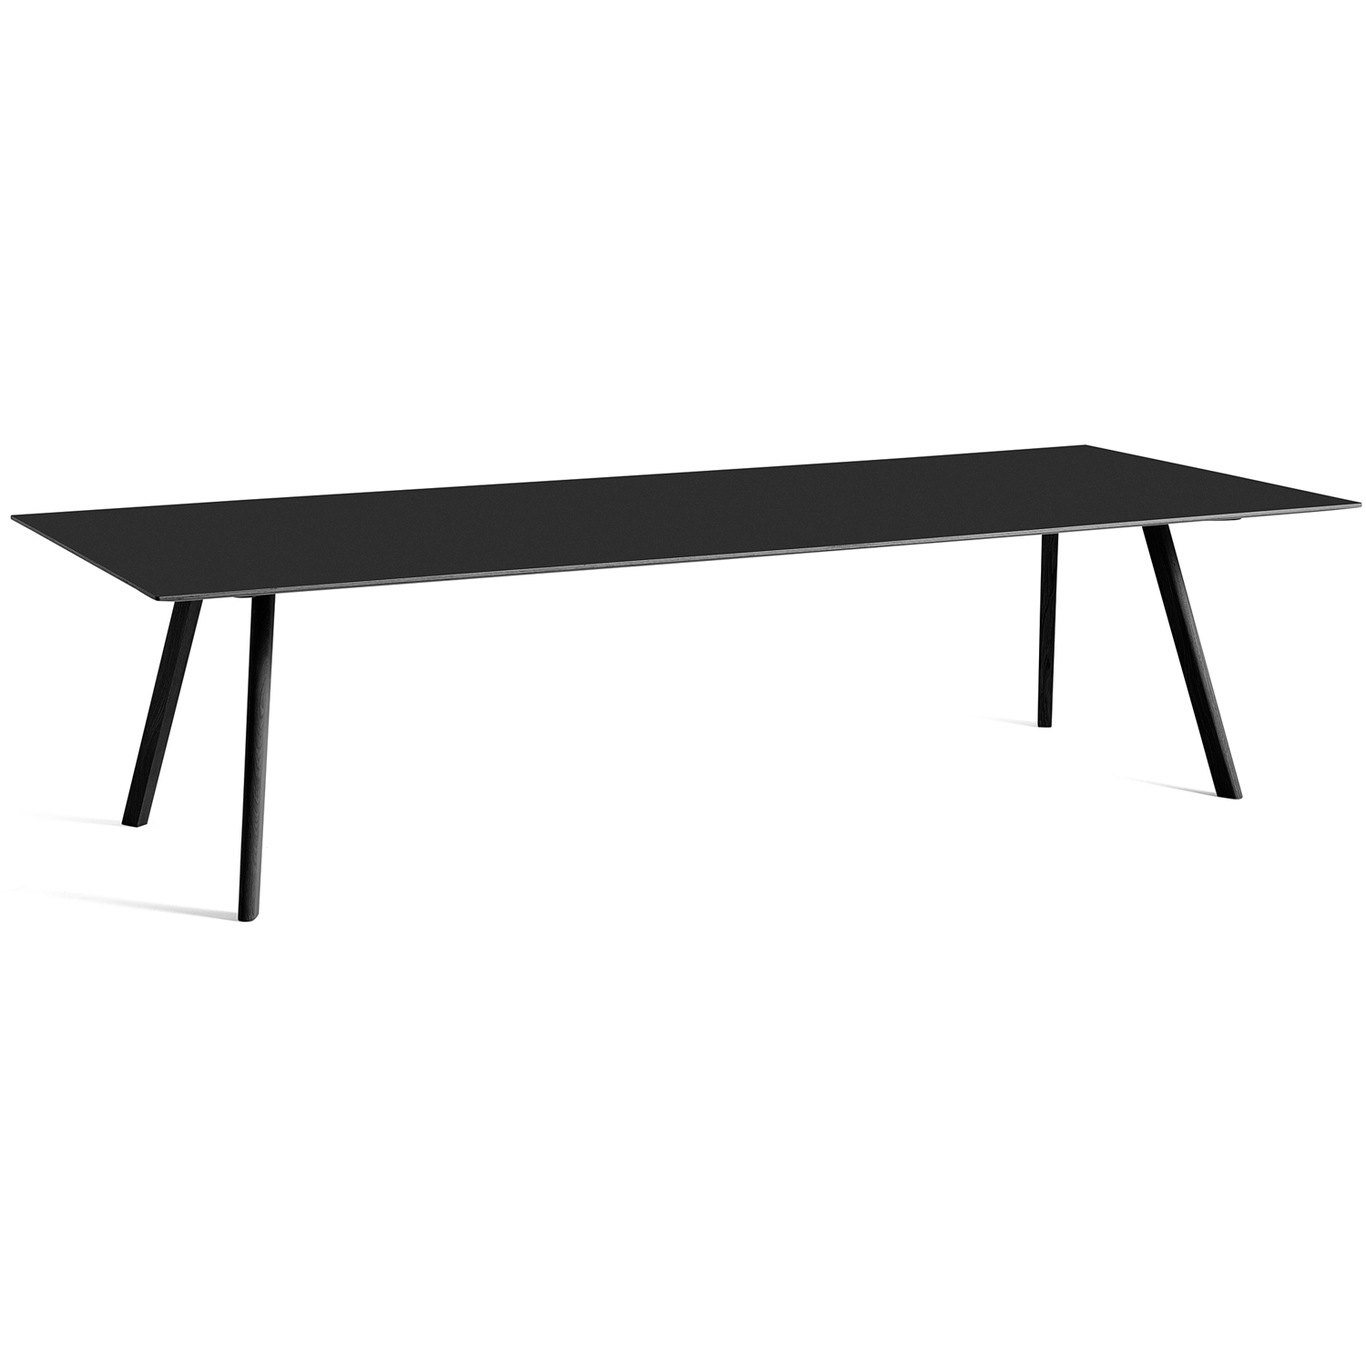 CPH 30 Tisch 300x120 cm, Schwarz Mit Wasserlack Behandelte Eiche